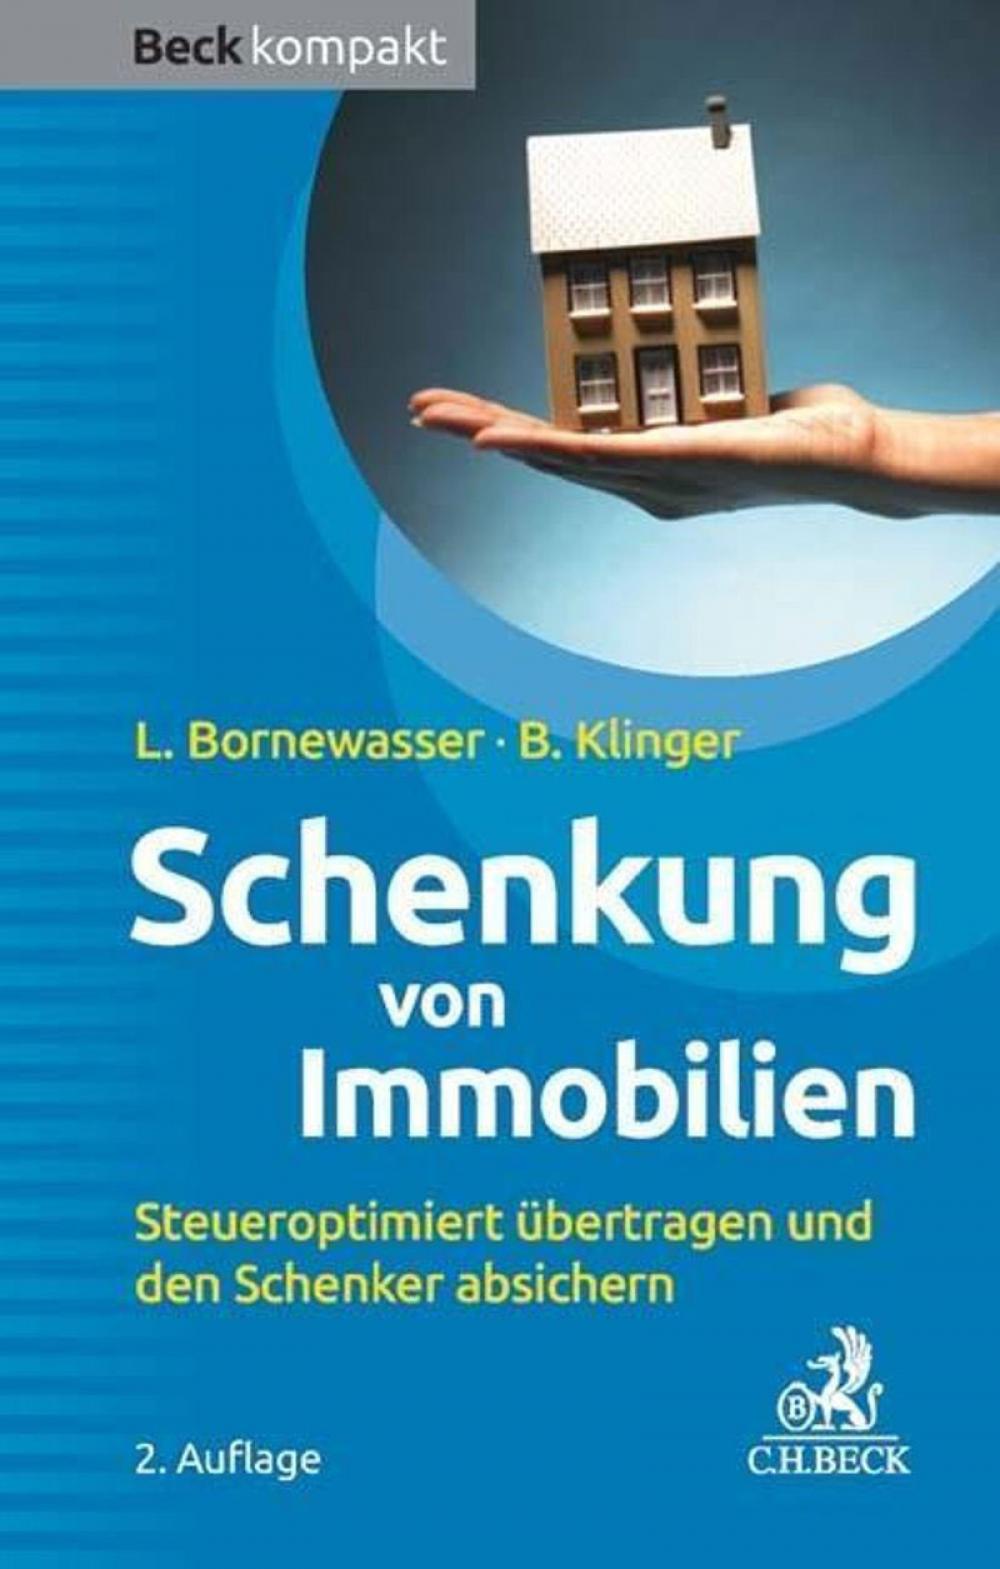 Schenkung von Immobilien - Grundbesitz steueroptimiert übertragen und den Schenker absichern title=